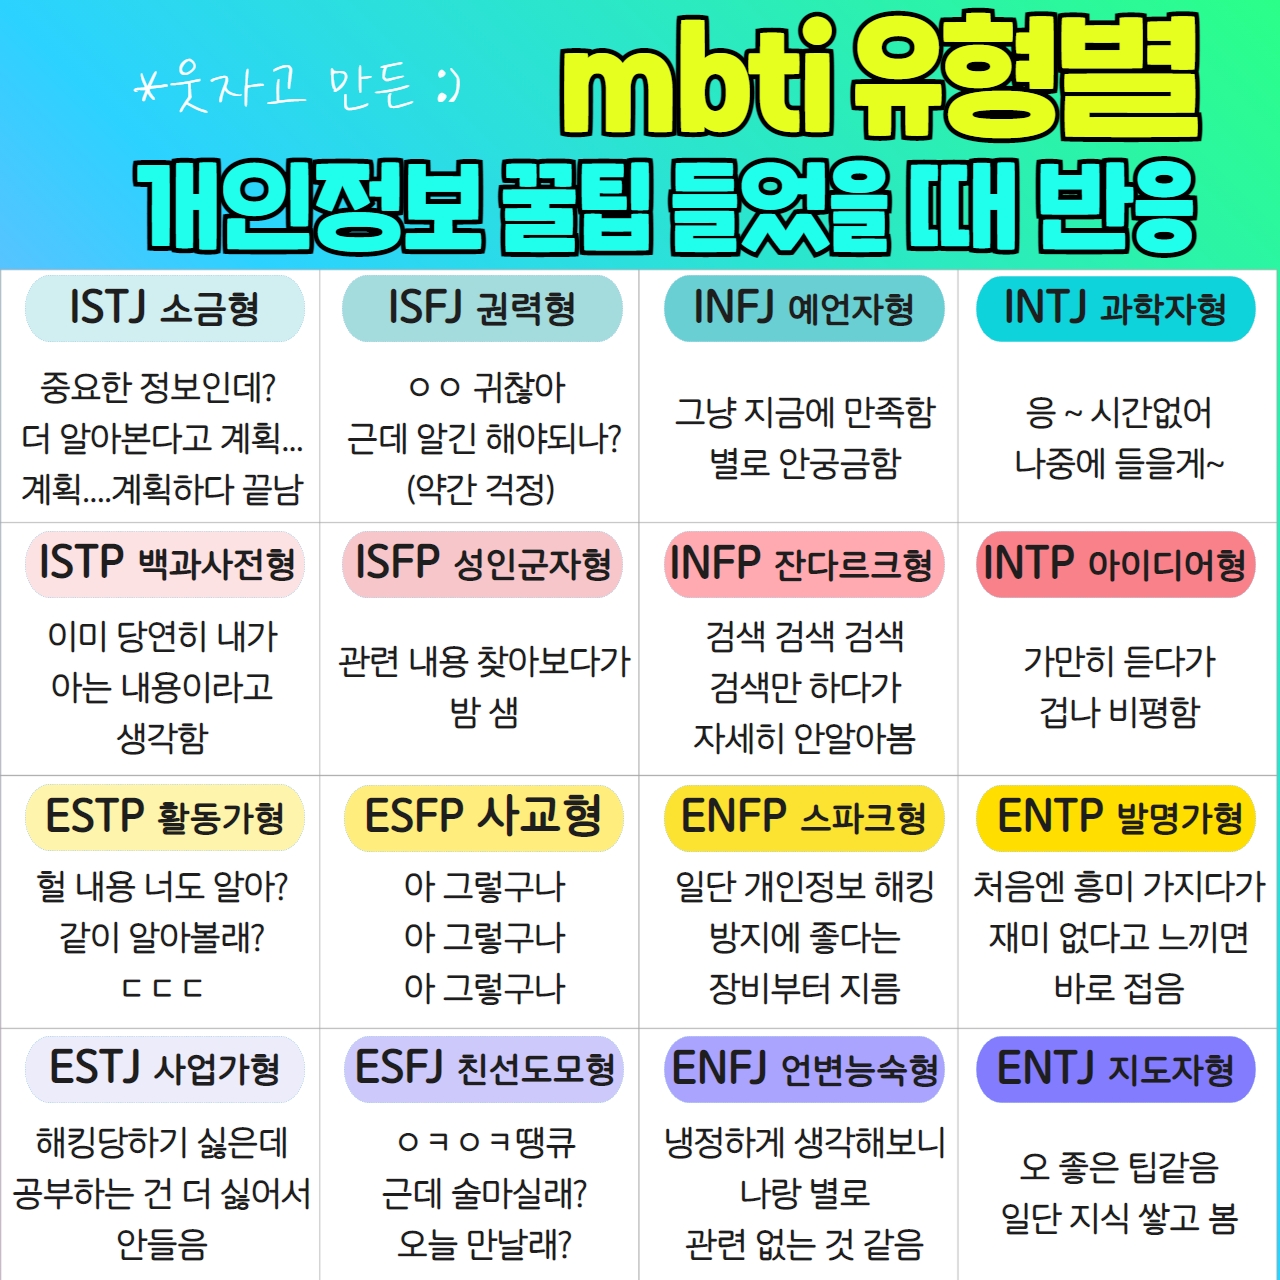 당신의 MBTI는 무엇인가요?